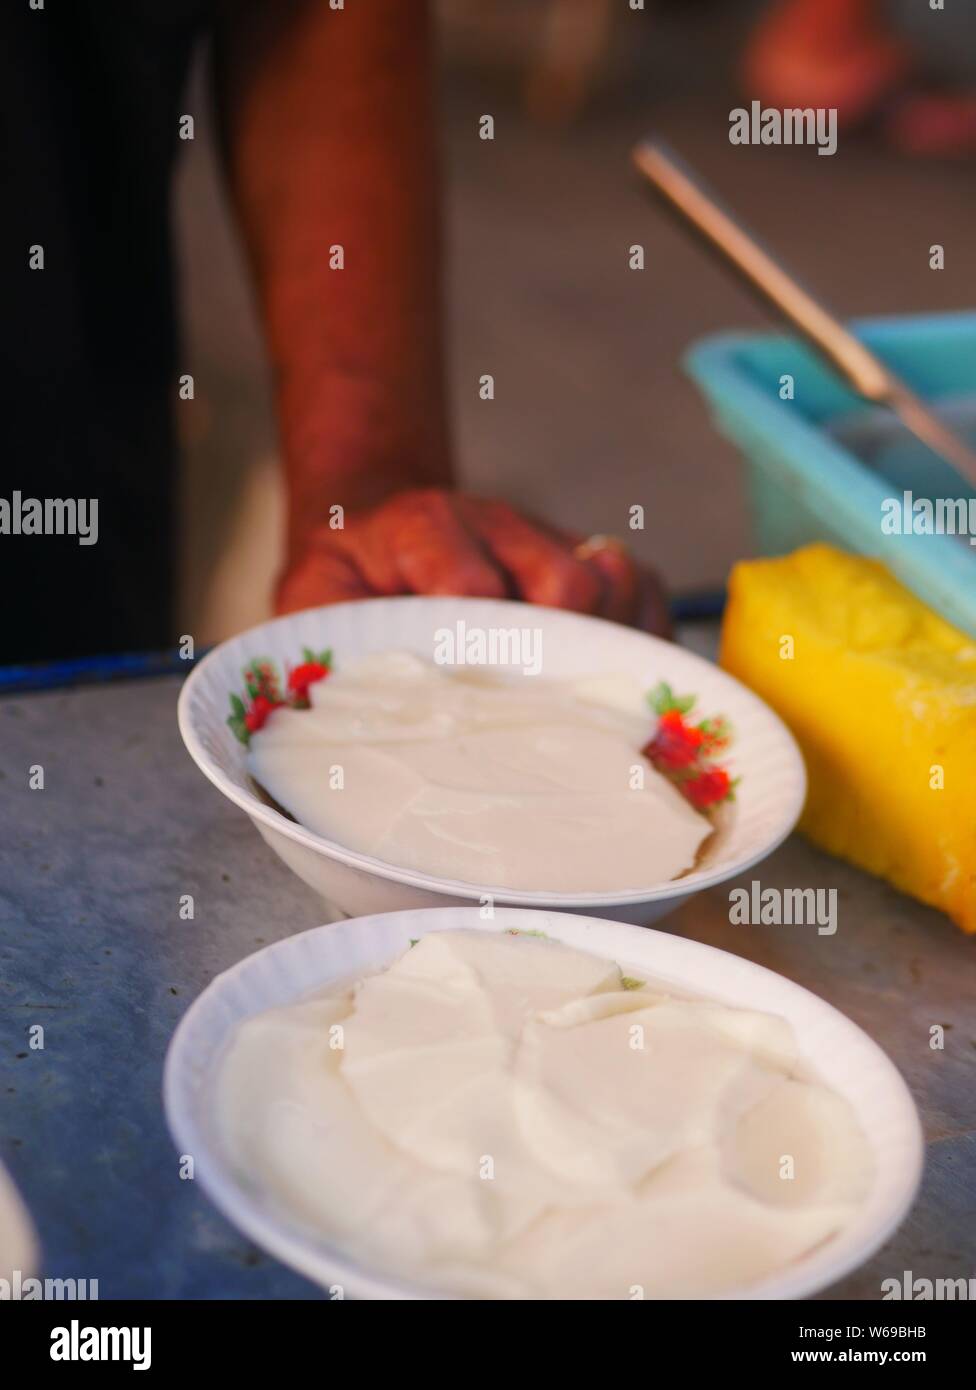 Verkäufer bereit tahok für Kunden. Tahok ist ein Pudding - wie Teller mit einem unverwechselbaren süßen Geschmack der javanischen Zucker. Stockfoto